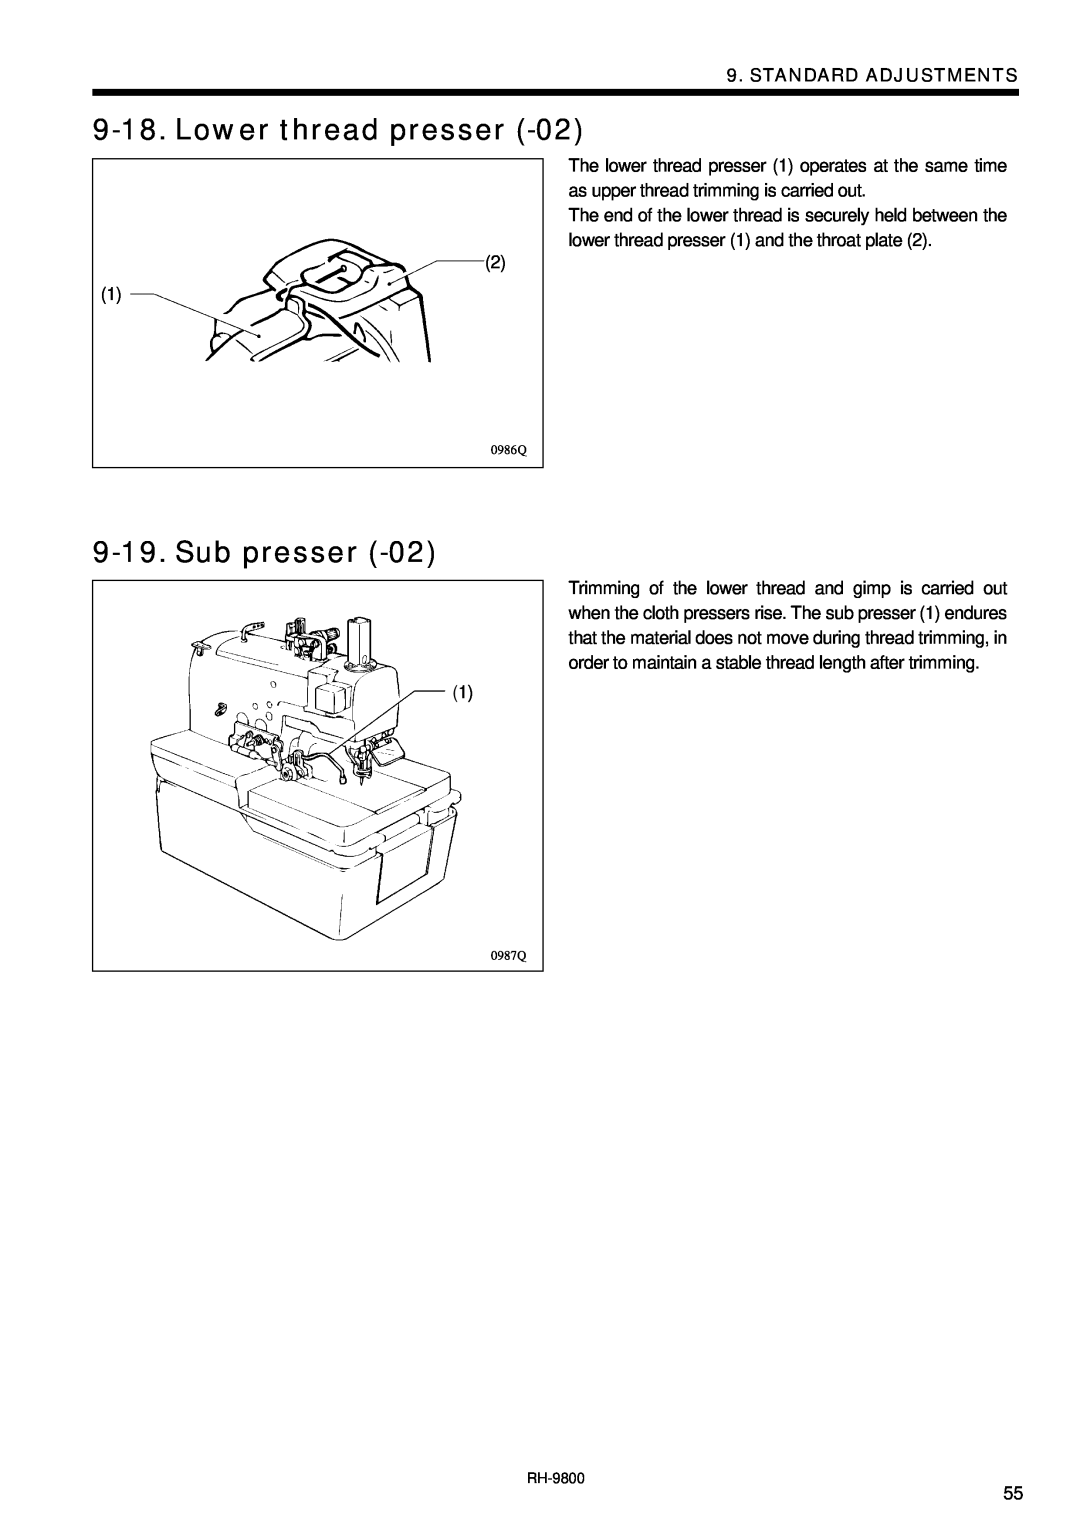 Brother DH4-B980 instruction manual Lower thread presser, Sub presser, Standard Adjustments, 0986Q, 0987Q 